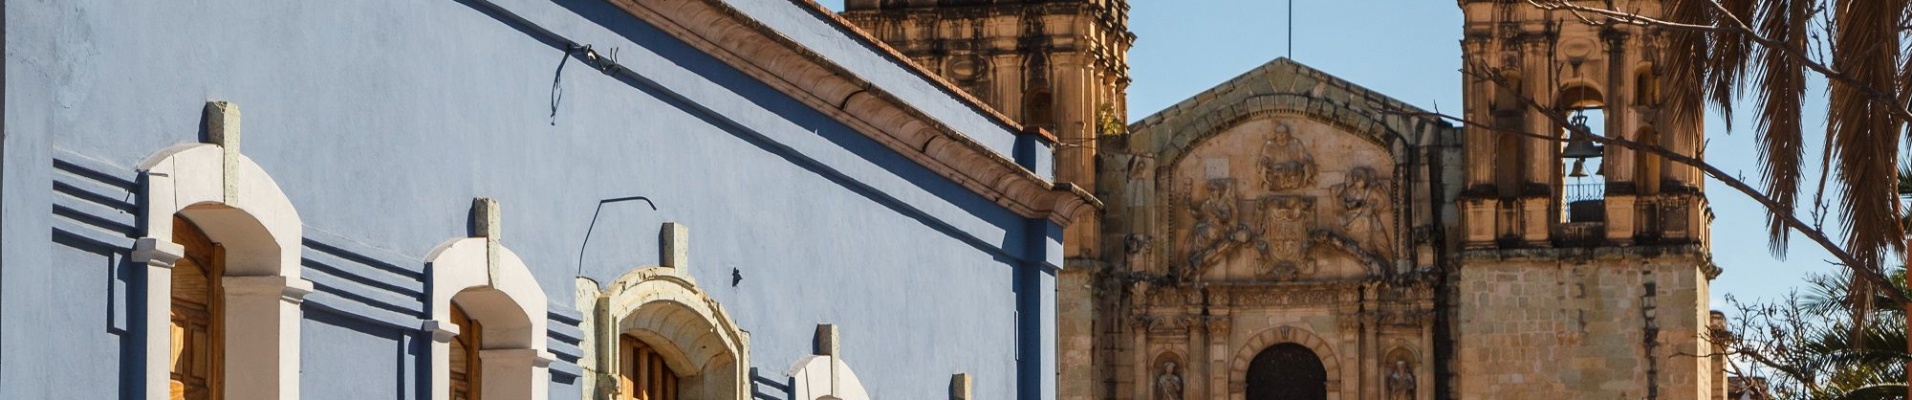 Oaxaca, ville coloniale, façades colorées, église, Mexique